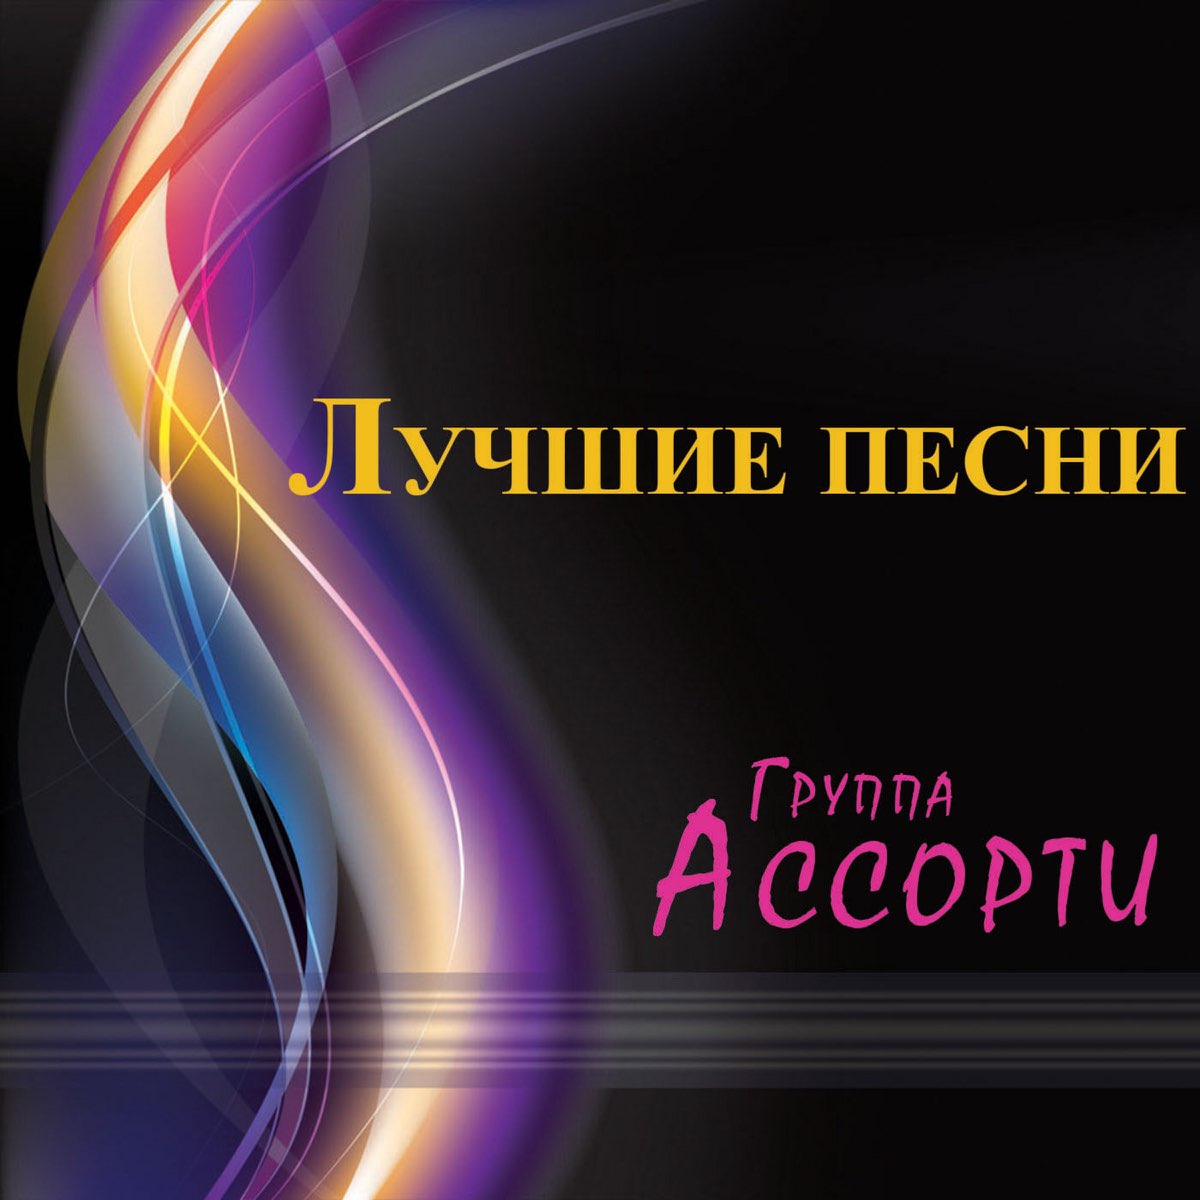 Ассорти из песен 7 букв. Ассорти — три белых коня (Ayur Tsyrenov Remix). Группа неземное Притяжение.